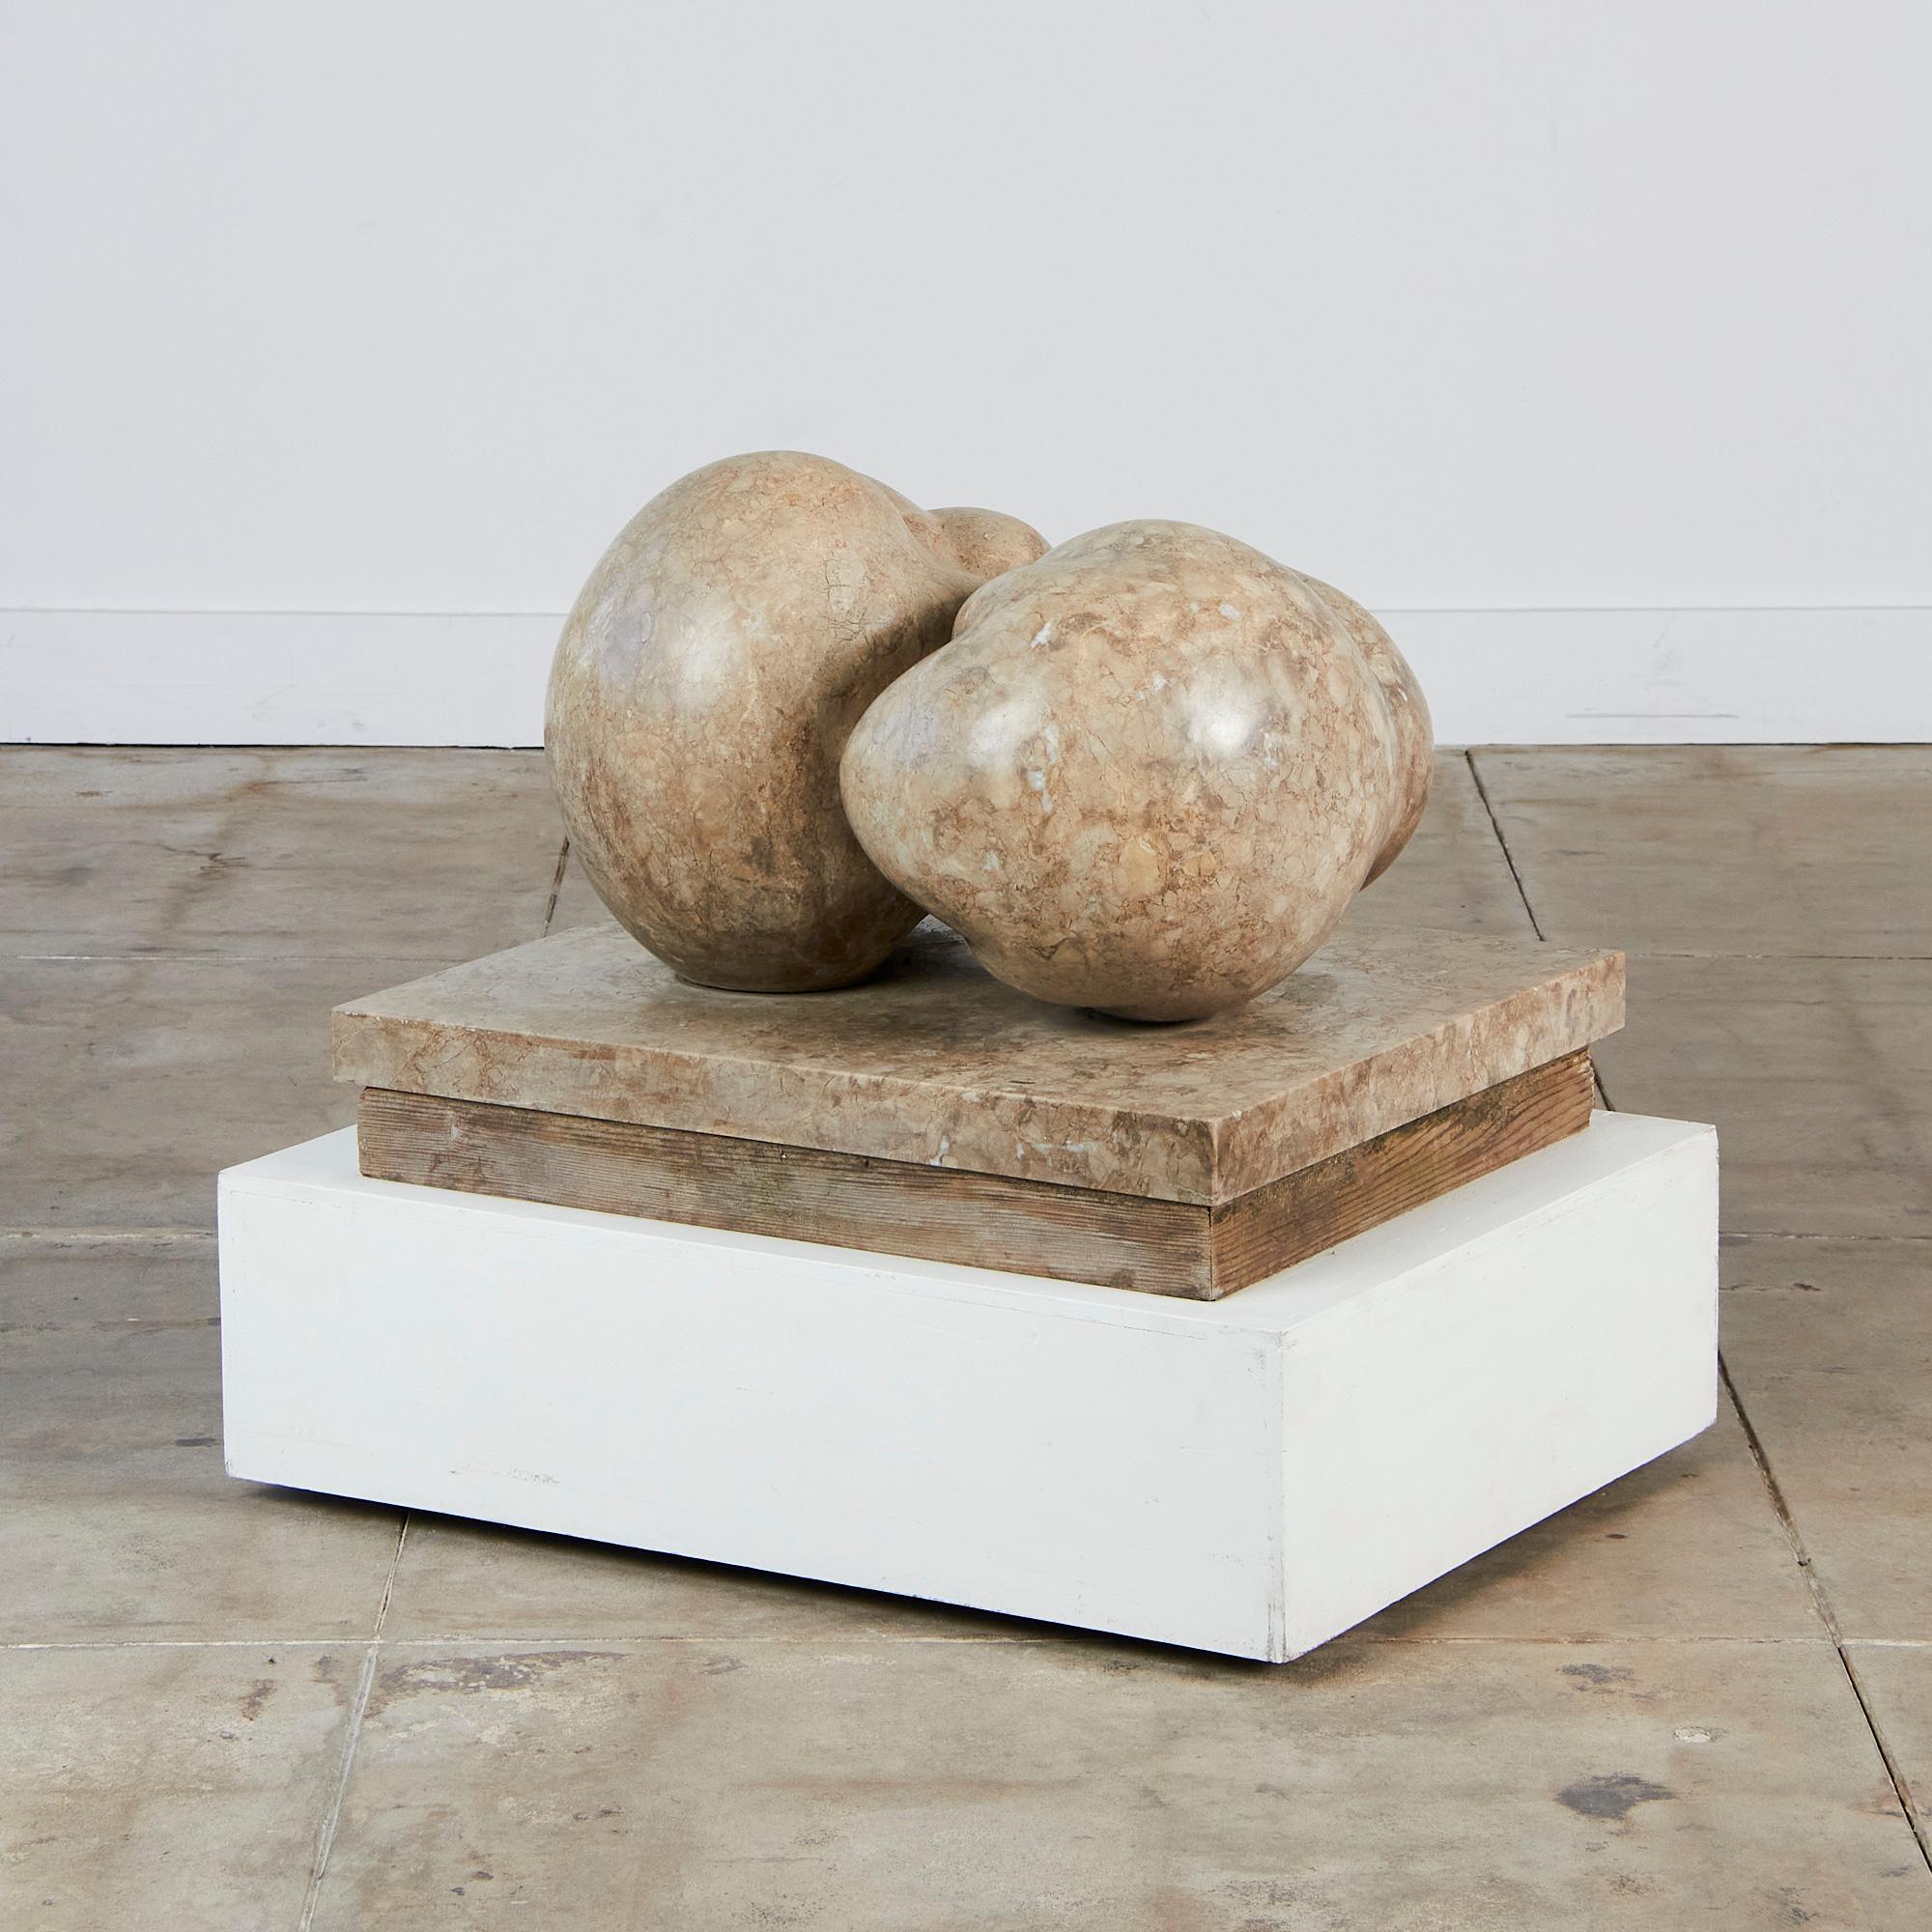 Cette sculpture d'Amalia Schulthess fait partie de sa série Canto, c.1974, Los Angeles. Le moulage présente un style seins-fruits, exposé sur une plate-forme basse, ressemblant à un fruit géant renversé. On ne peut s'empêcher de voir une tomate